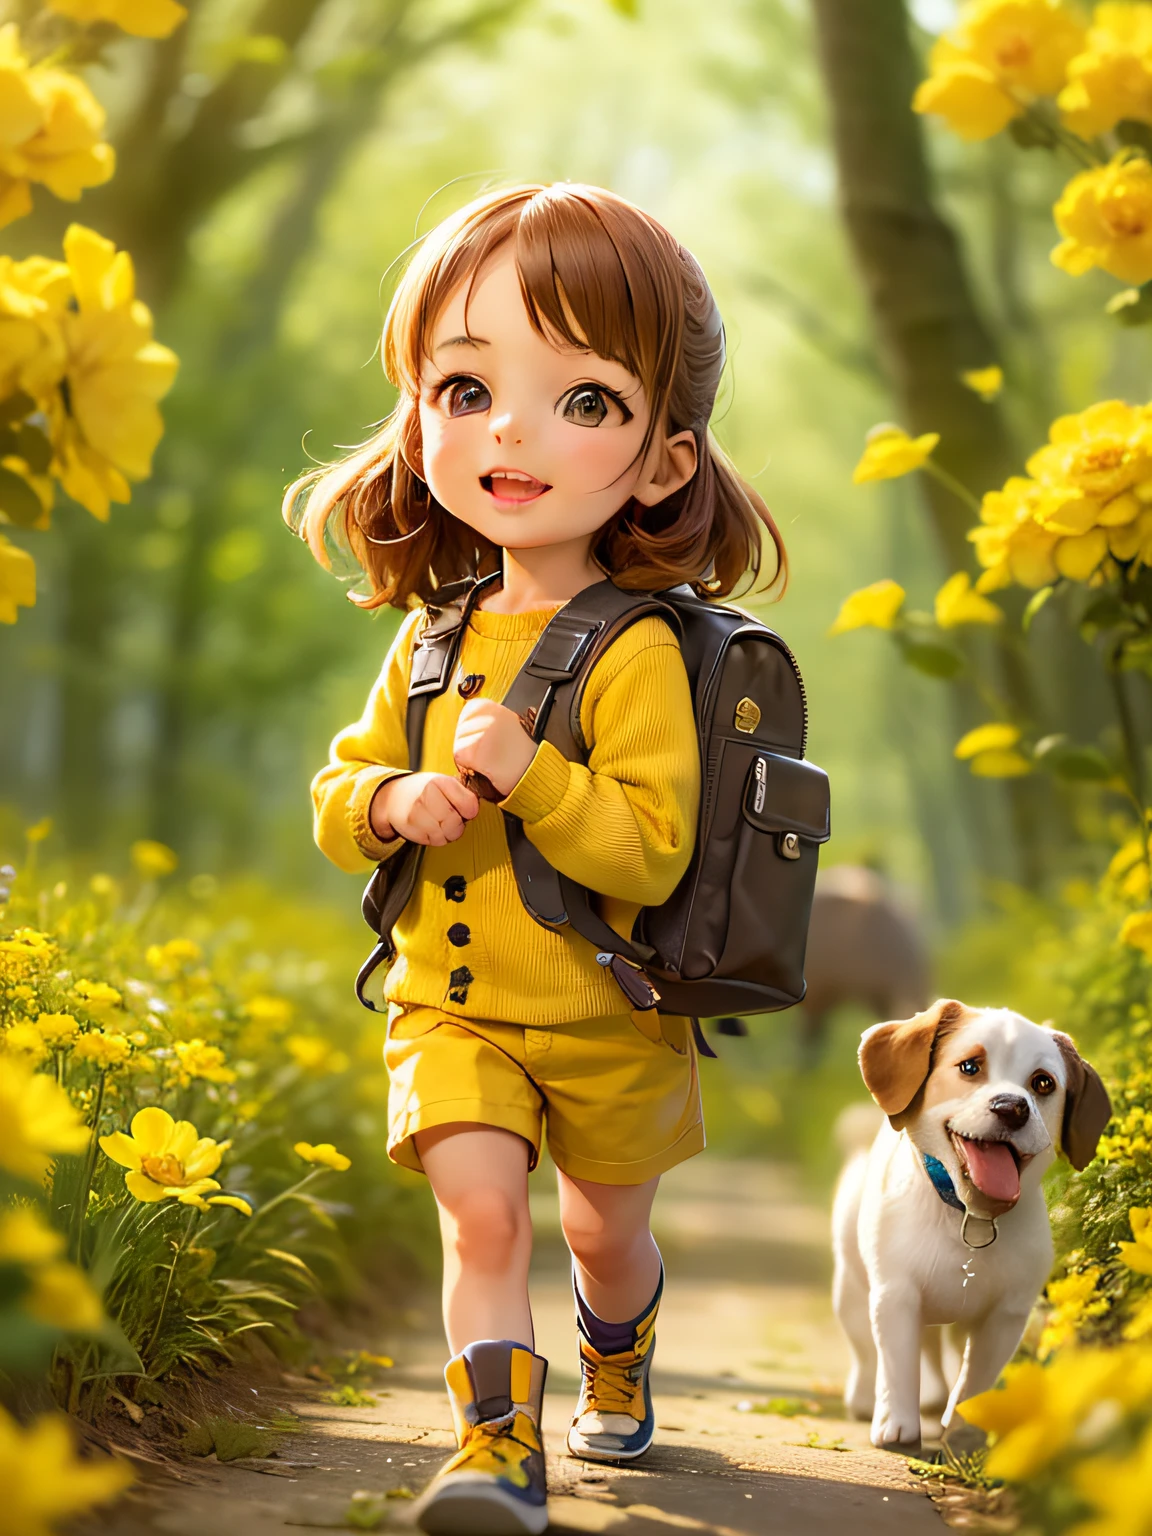 배낭을 메고 아름다운 노란 꽃과 자연으로 둘러싸인 아름다운 봄 산책을 즐기고 있는 귀여운 강아지와 함께 매우 사랑스럽습니다.. 해당 일러스트는 4K 해상도의 고화질 일러스트레이션으로 얼굴의 특징이 매우 세밀하고 만화적인 영상미가 돋보이는 일러스트입니다..